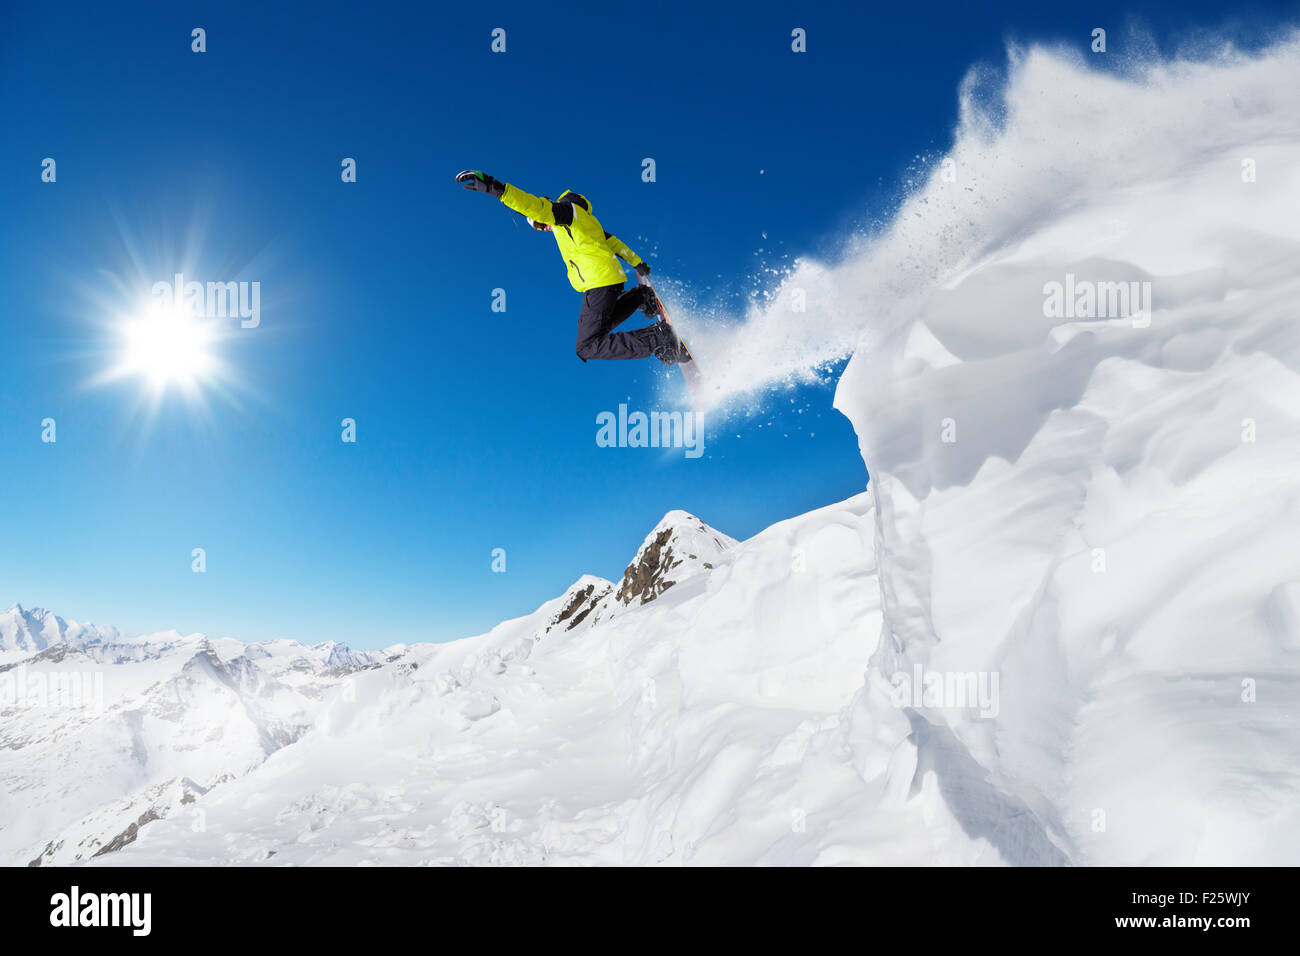 Jumping snowboarder at jump Stock Photo